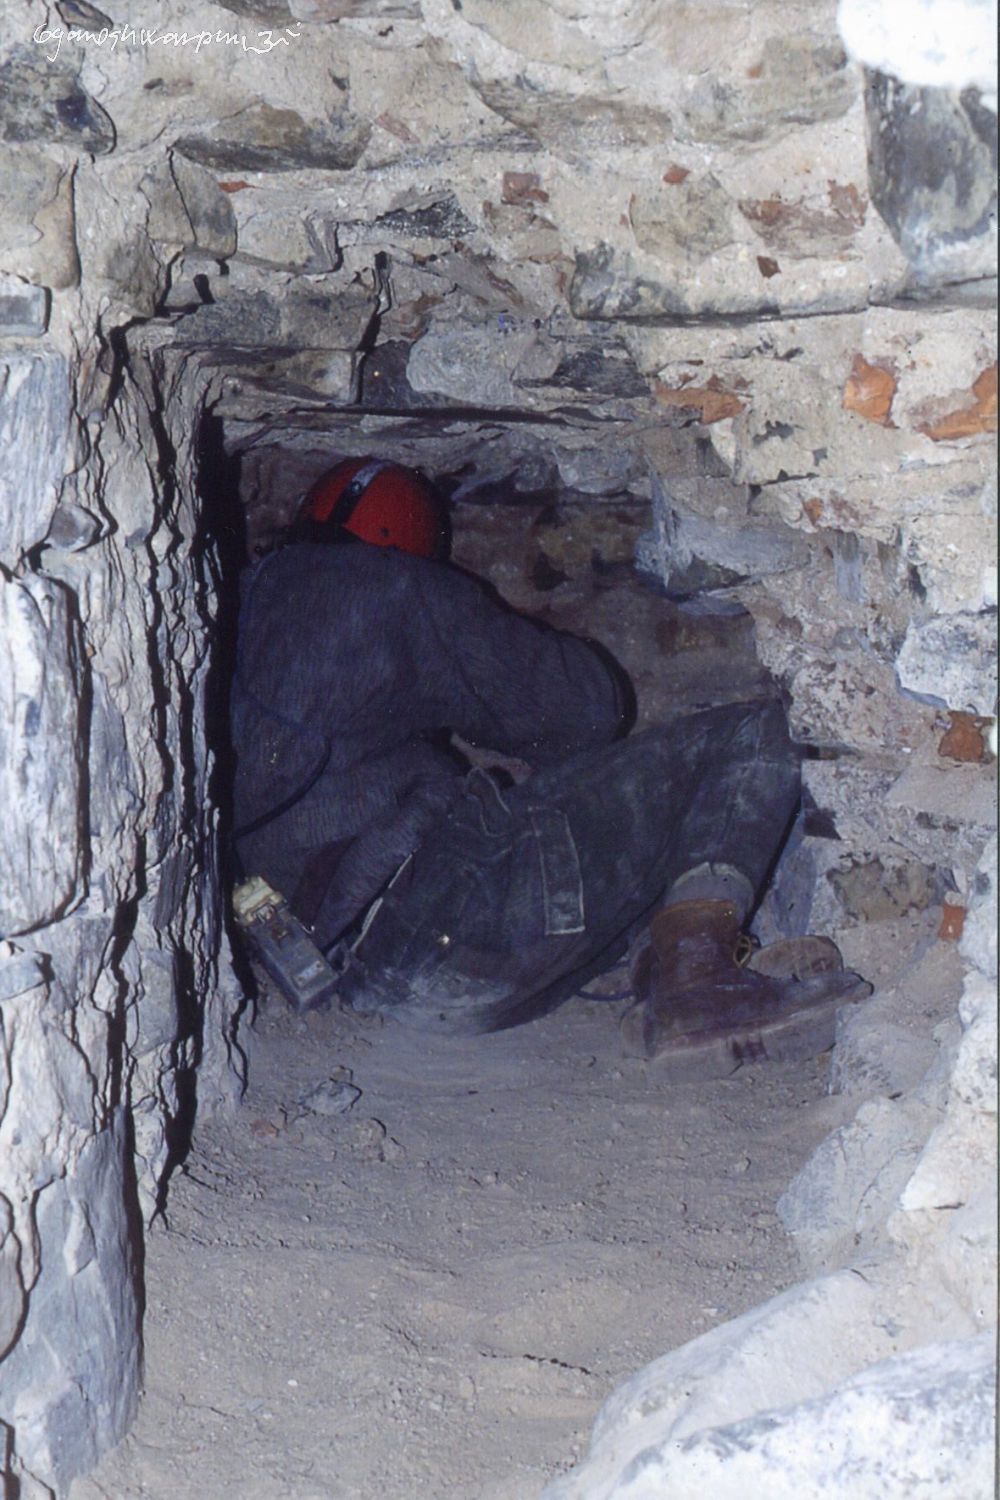 Ražba objevné sondy hutnou zdí do ossária pod věží chrámu Panny Marie ve Křtinách (1991). Foto: Marek Šenkyřík 1991.